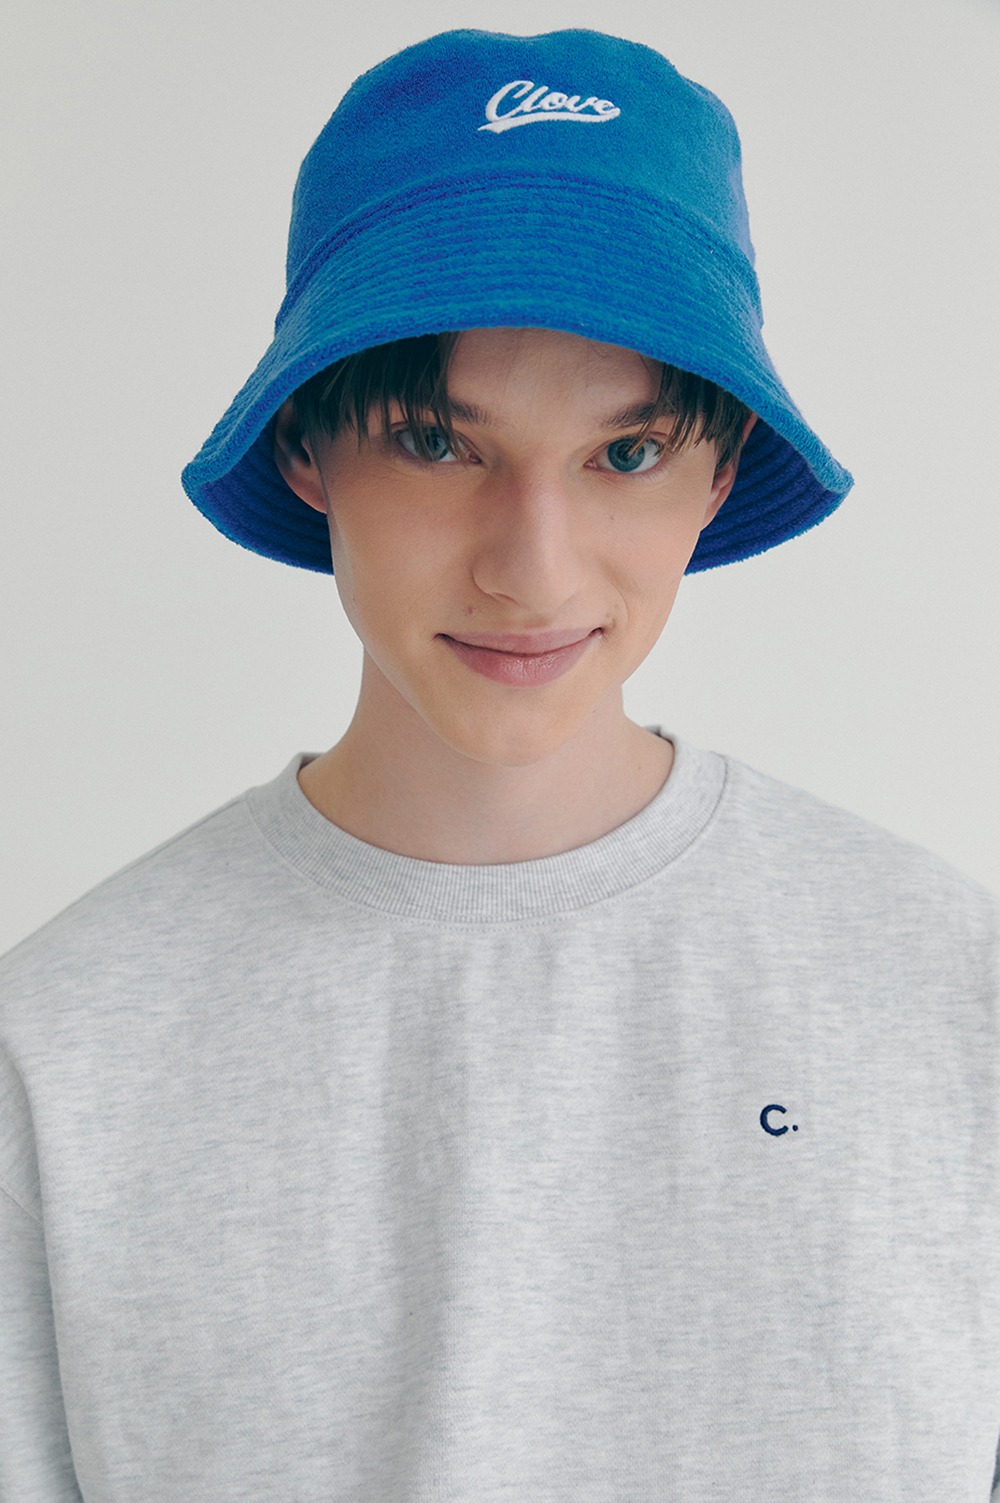 clove - [22SS clove] Terry Bucket Hat (Blue)